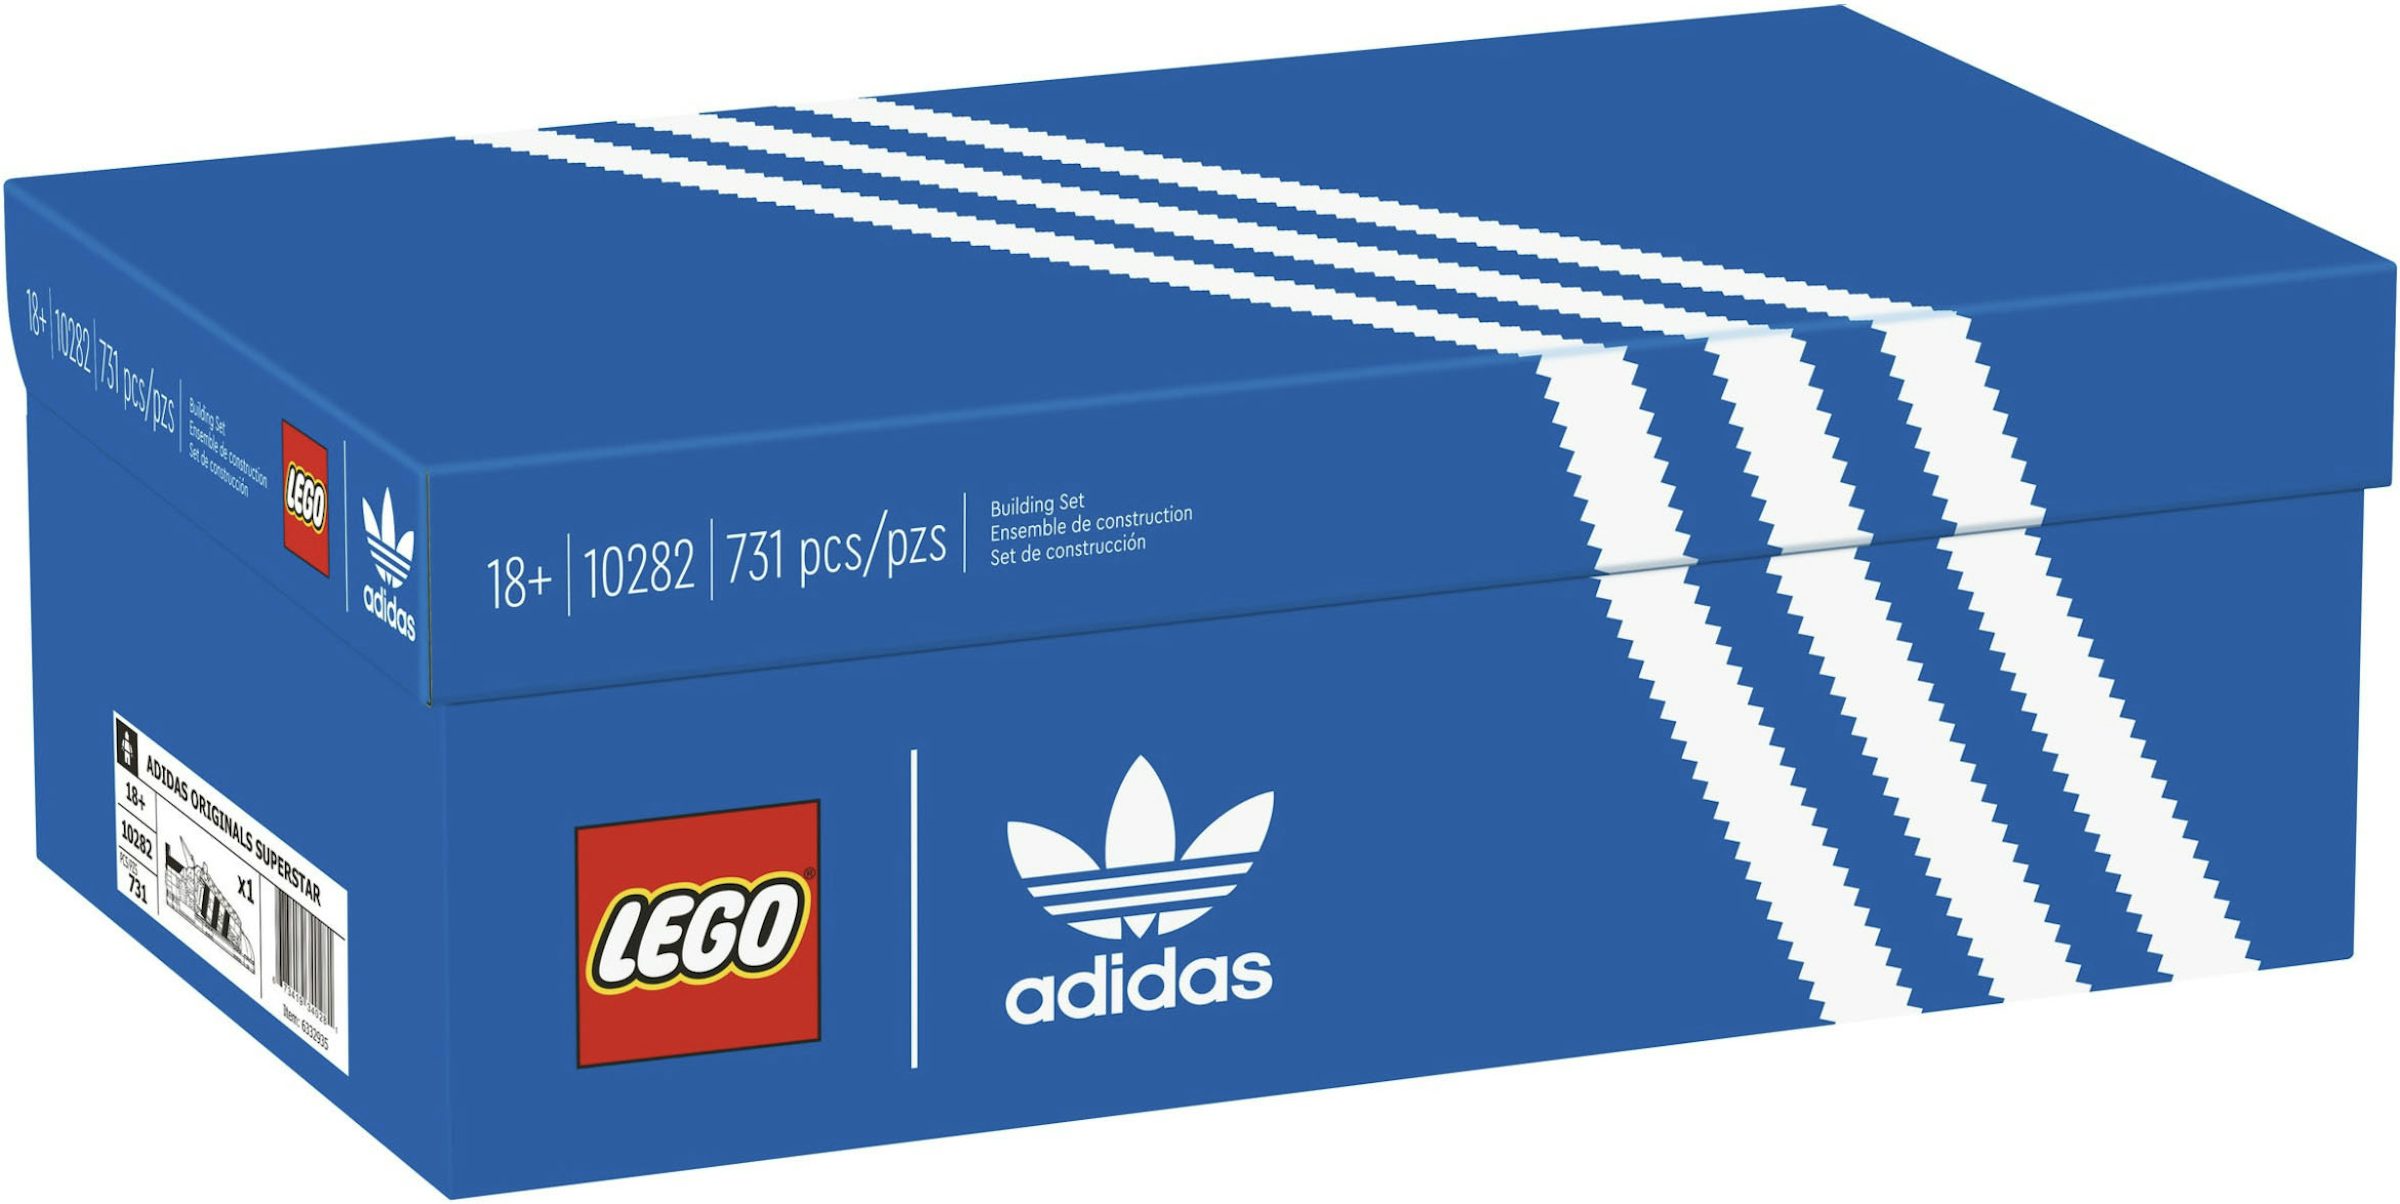 LEGO adidas Original Superstar Set 10282 - SS21 - US